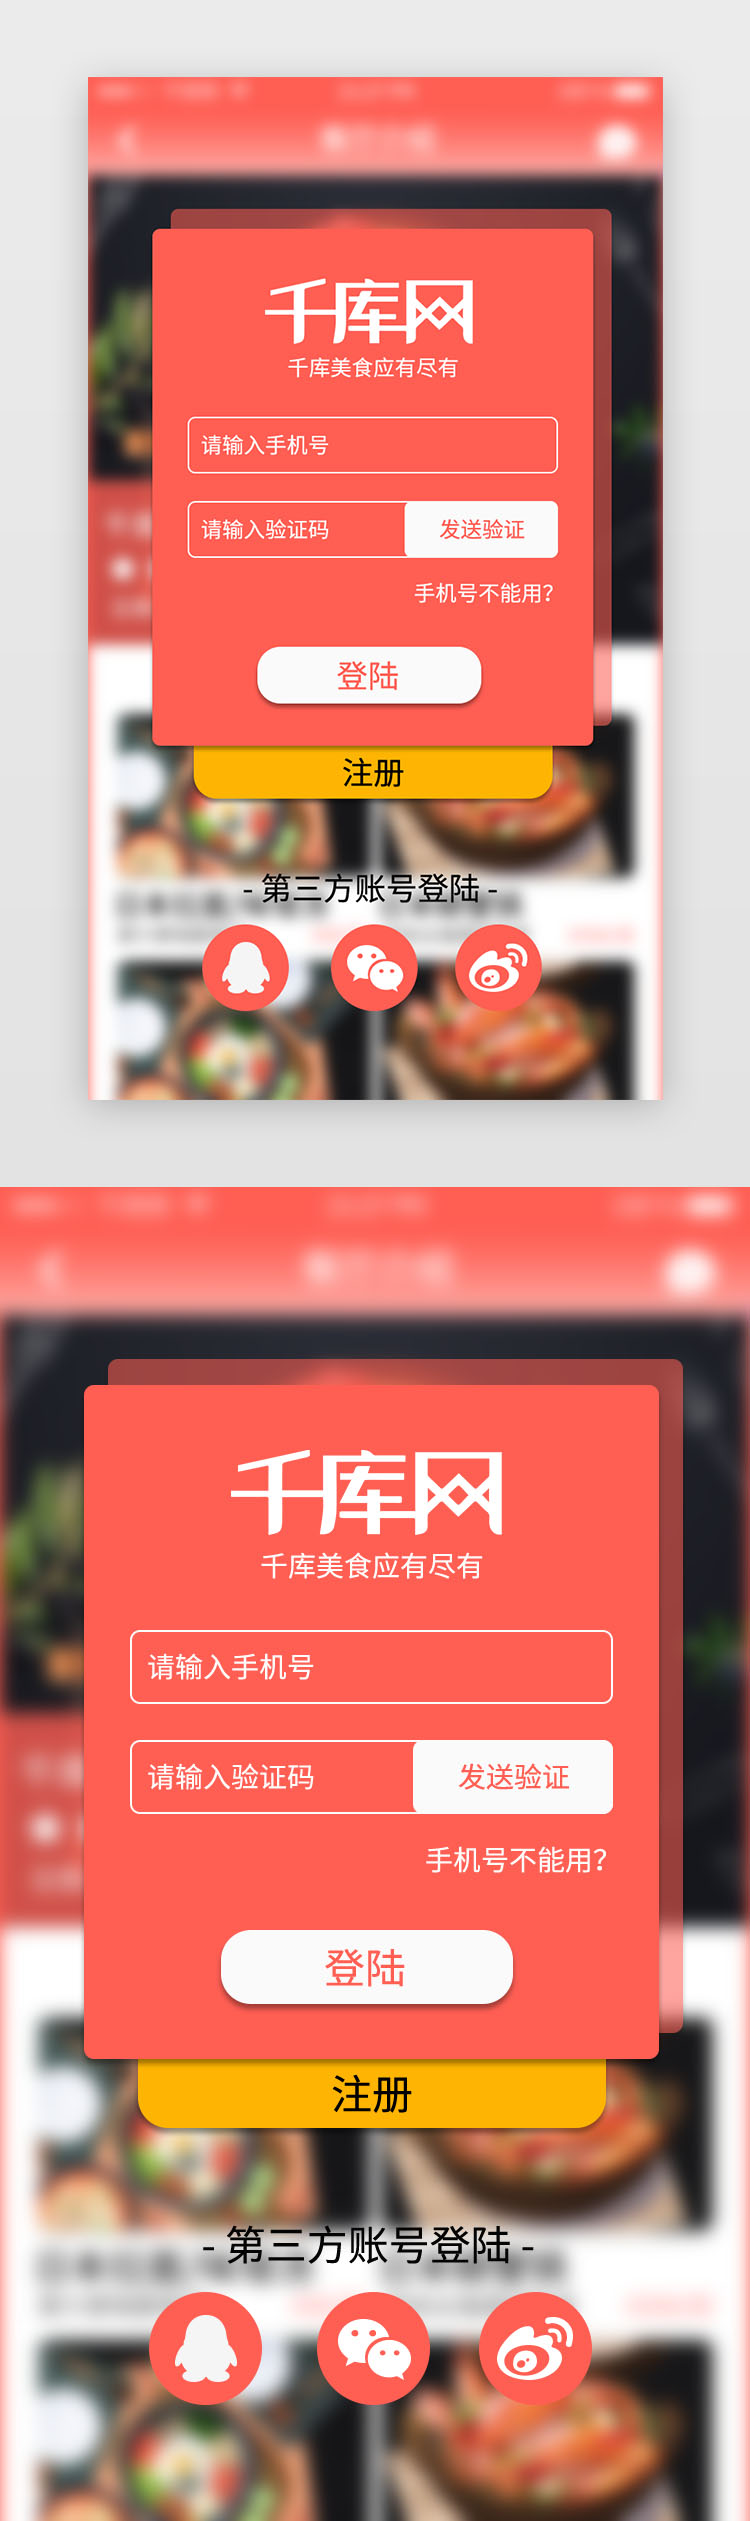 红色渐变美食app图片虚化背景登陆页图片